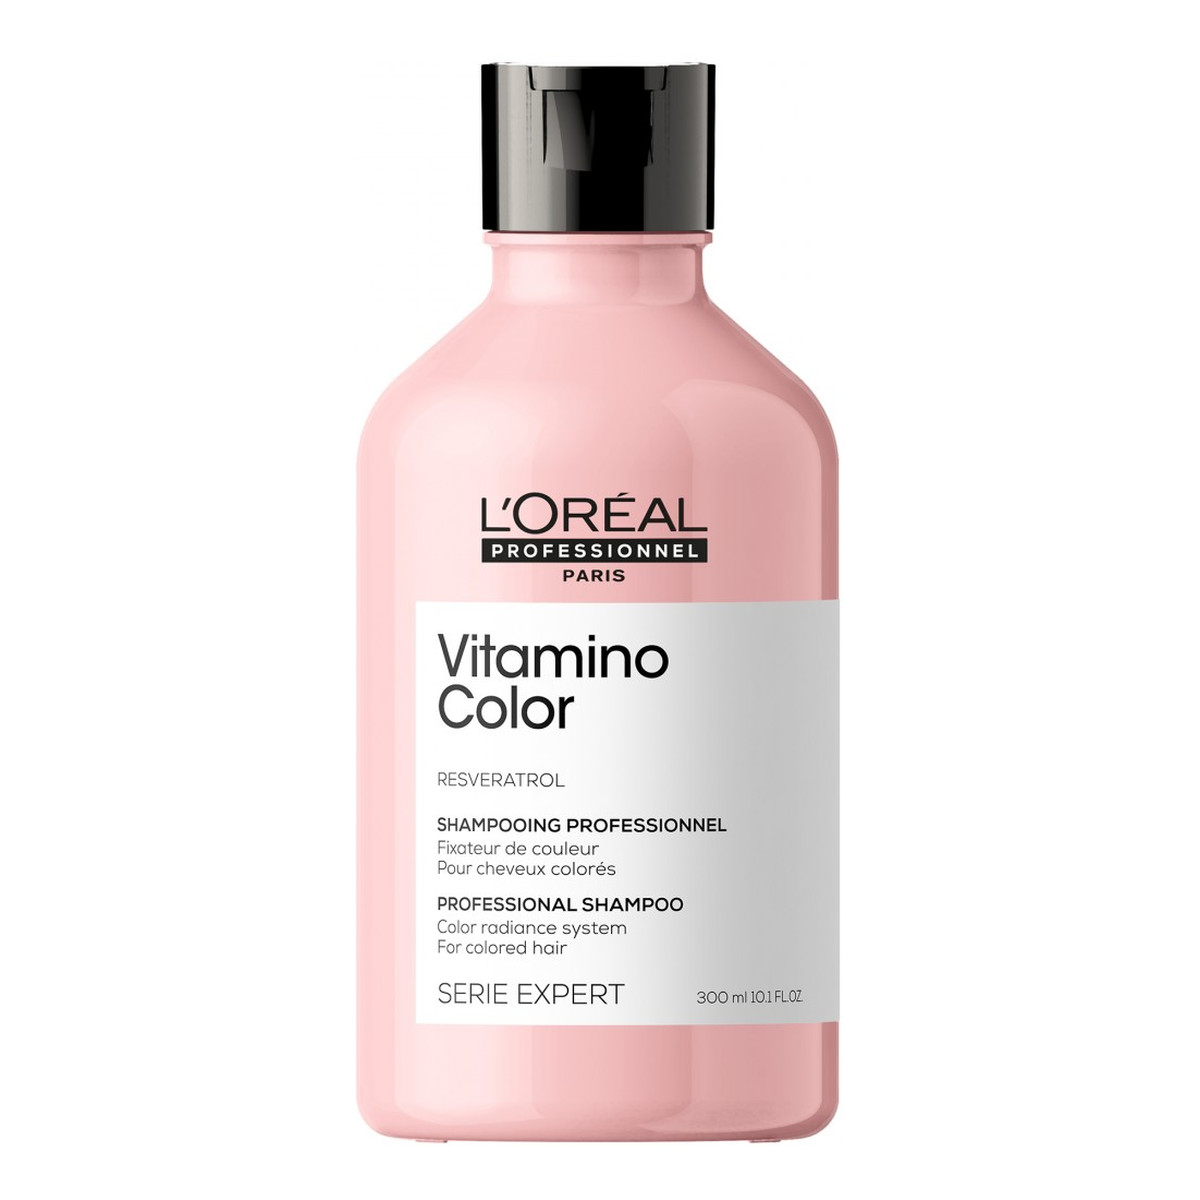 L'Oreal Paris Vitamino Color Witaminowy szampon do włosów farbowanych 300ml